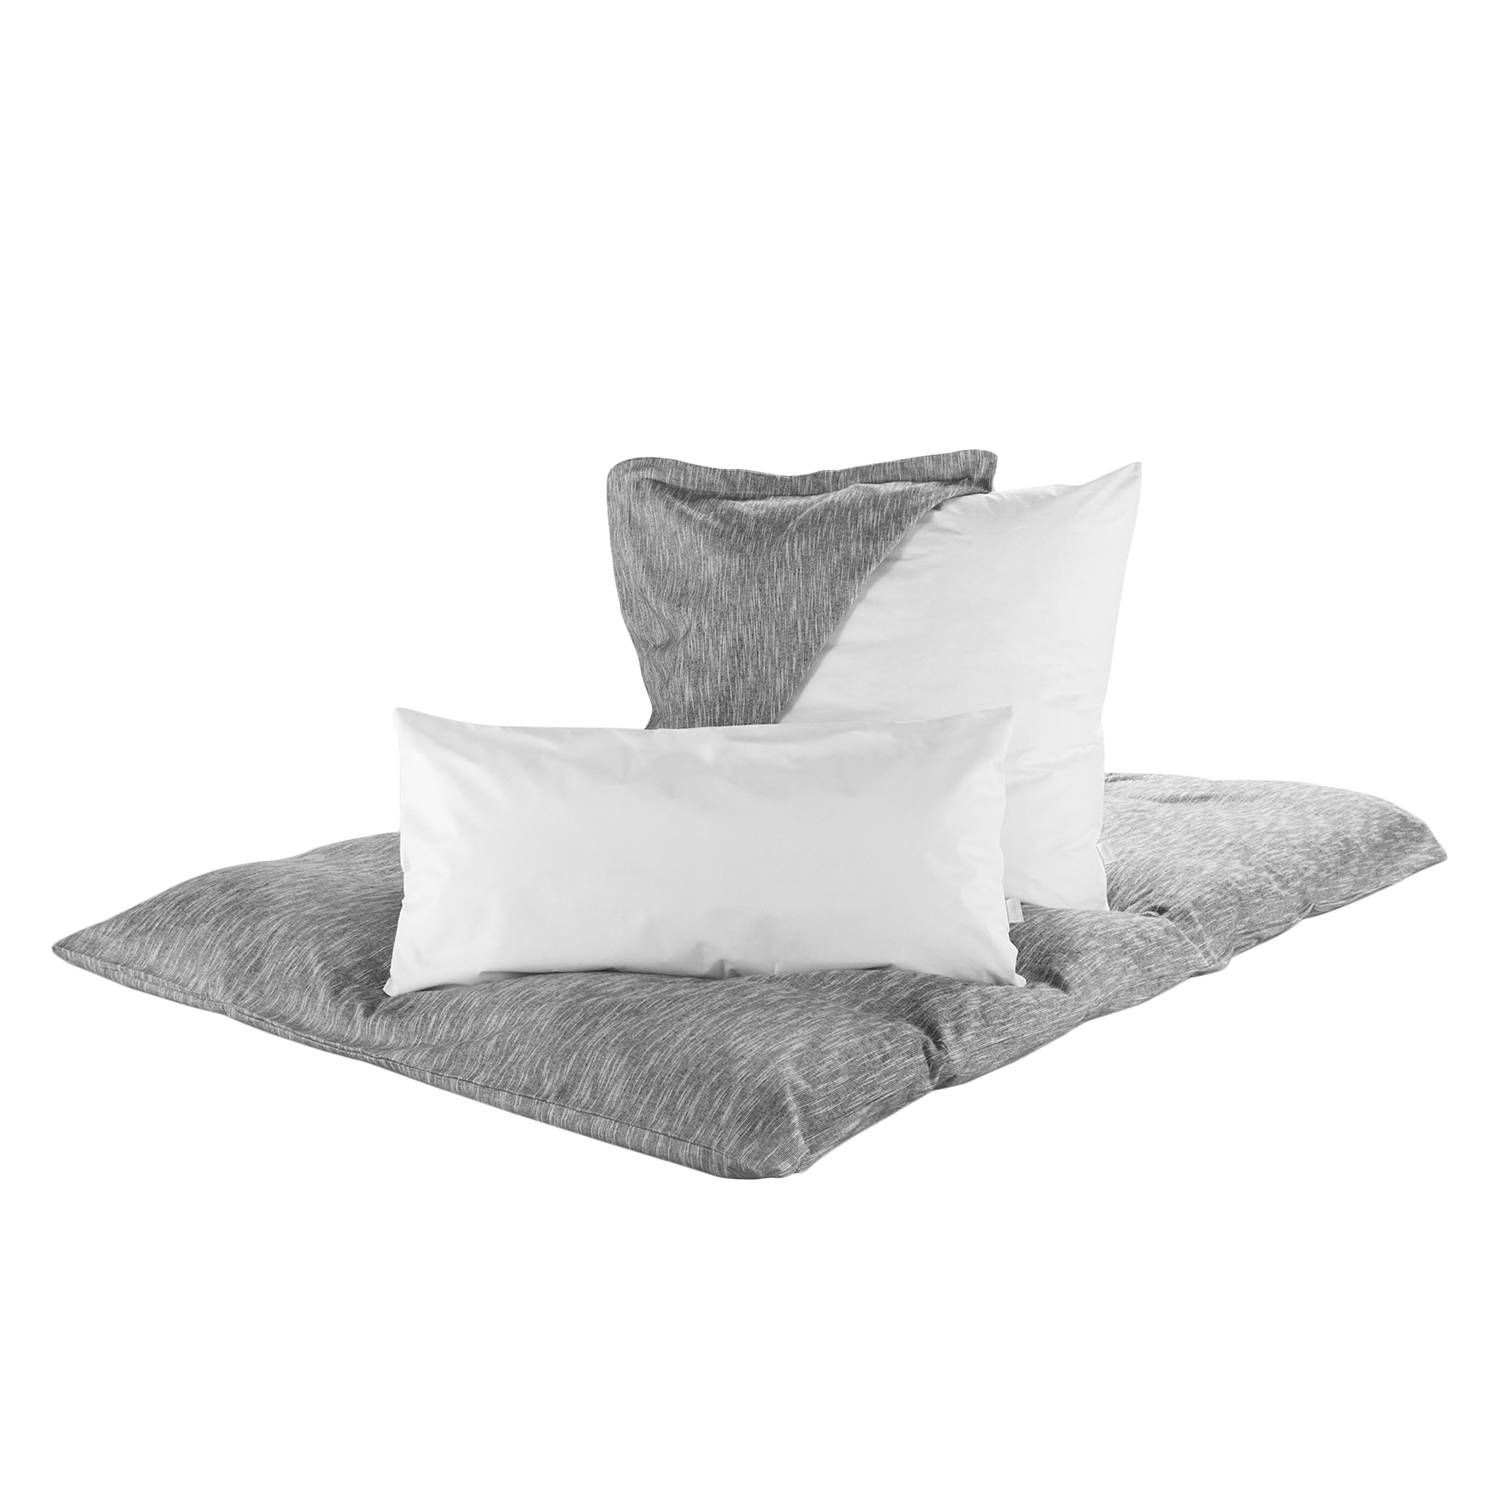 Dormite Kissenschutzbezug Milbendicht Weiß 70% Polyester/30% Polyamid 40x80x2 cm (BxHxT) von Dormisette